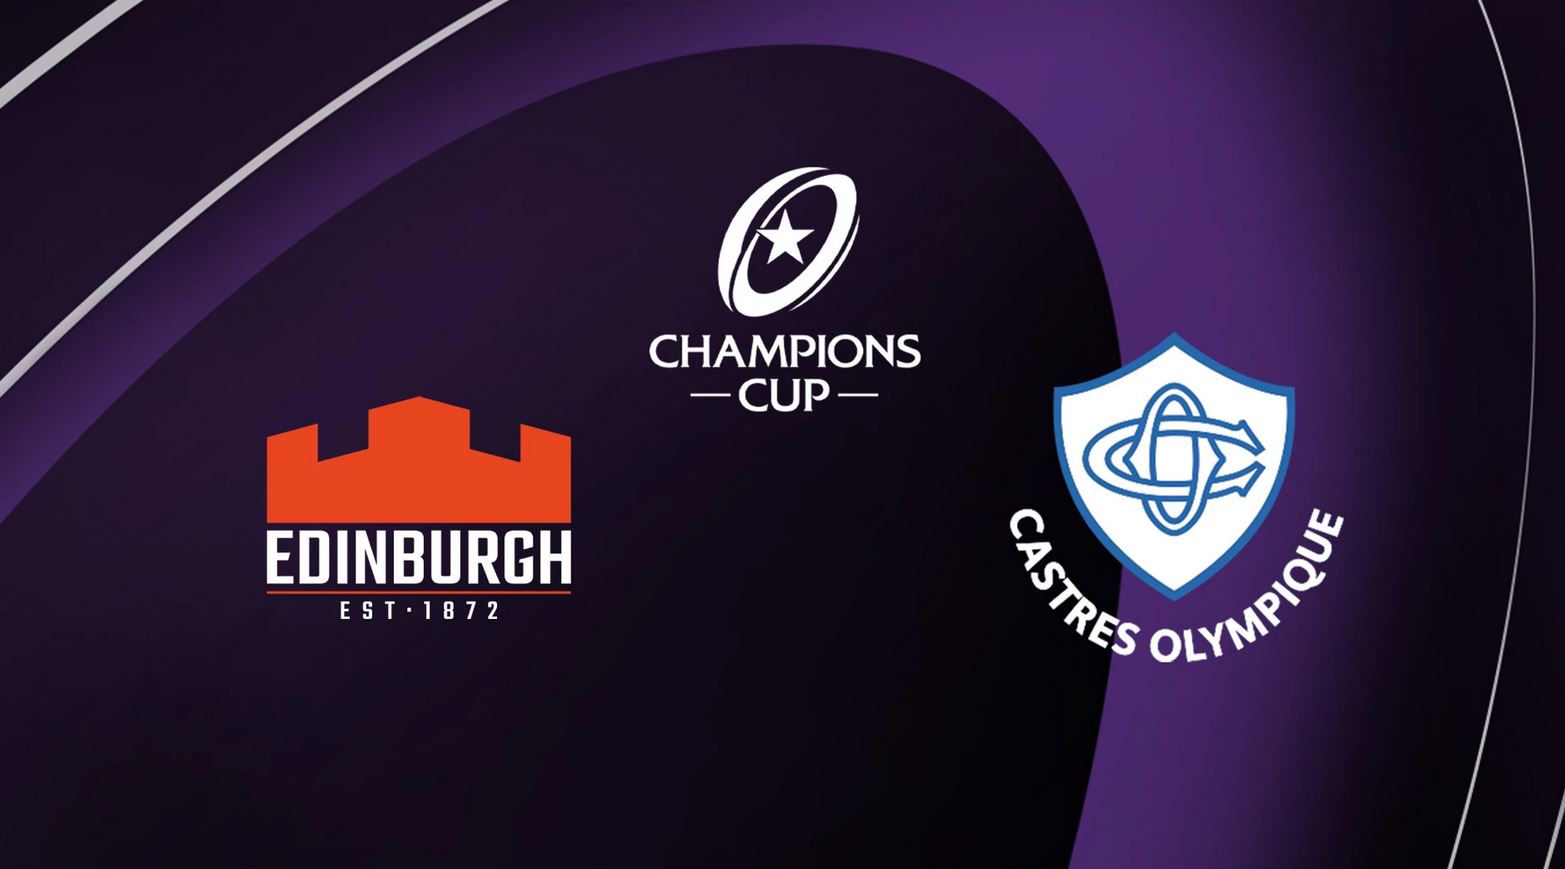 Edinburg / Castres (TV/Streaming) Sur quelle chaîne et à quelle heure suivre le match de Champions Cup ?